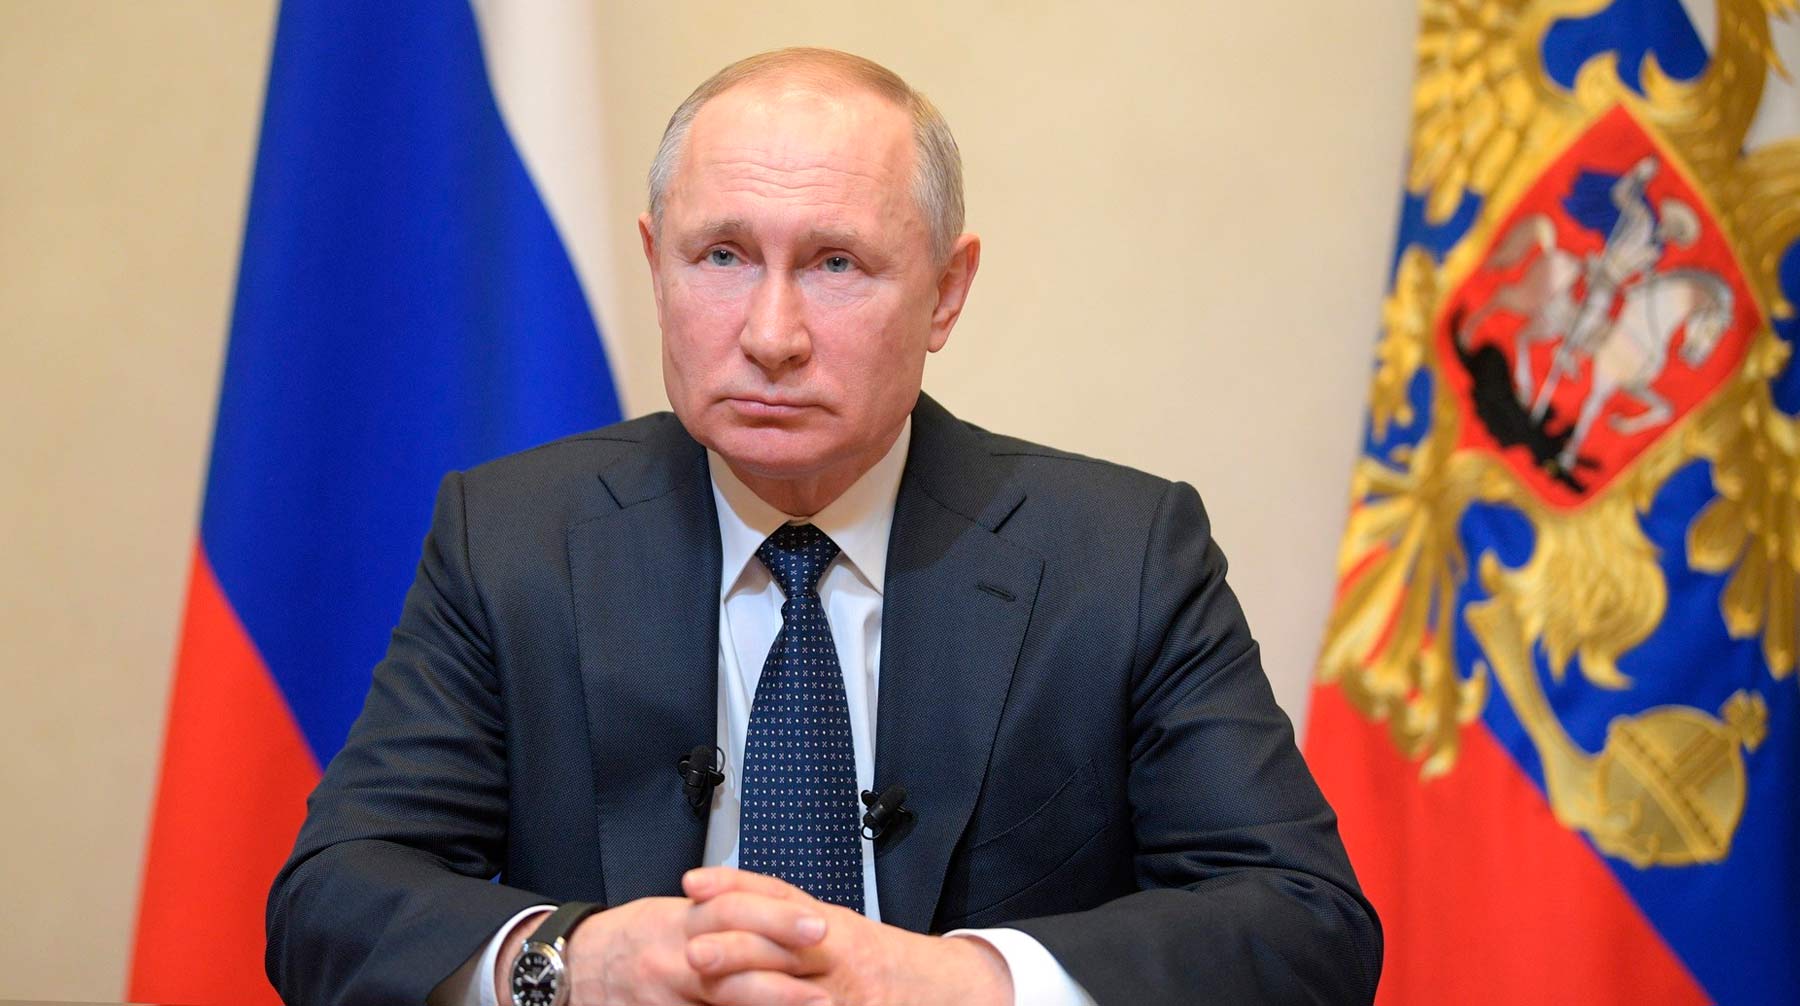 Владимир Путин не контактировал с заболевшим, подчеркнул Дмитрий Песков Фото: © Global Look Press / Kremlin Pool